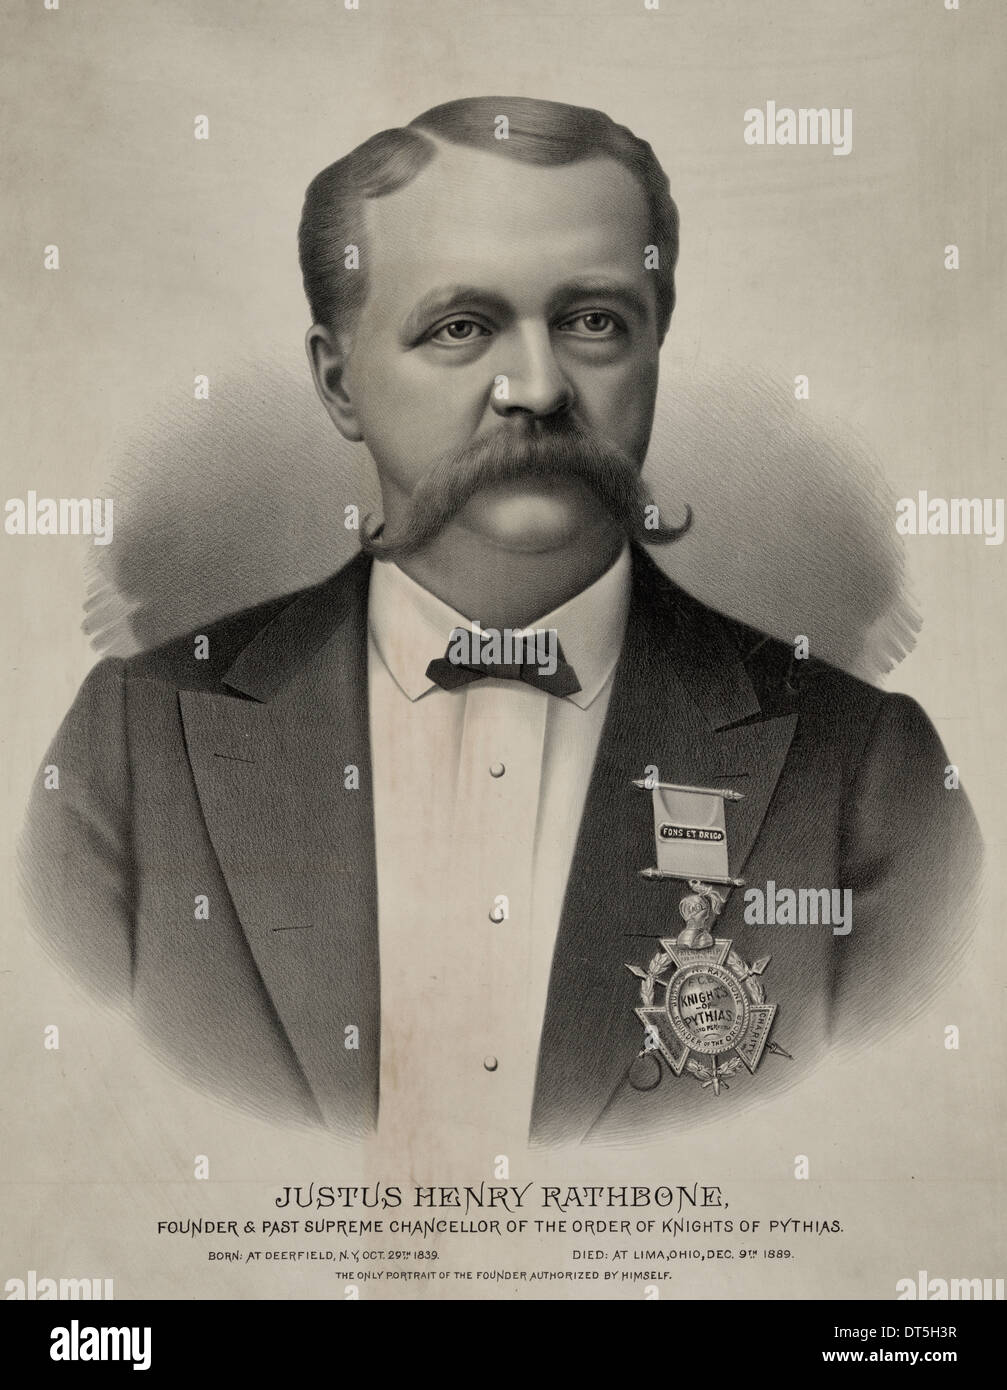 Justus Henry Rathbone, fondatore & passato cancelliere supremo dell'Ordine dei Cavalieri di Pythias sono, 1891 Foto Stock